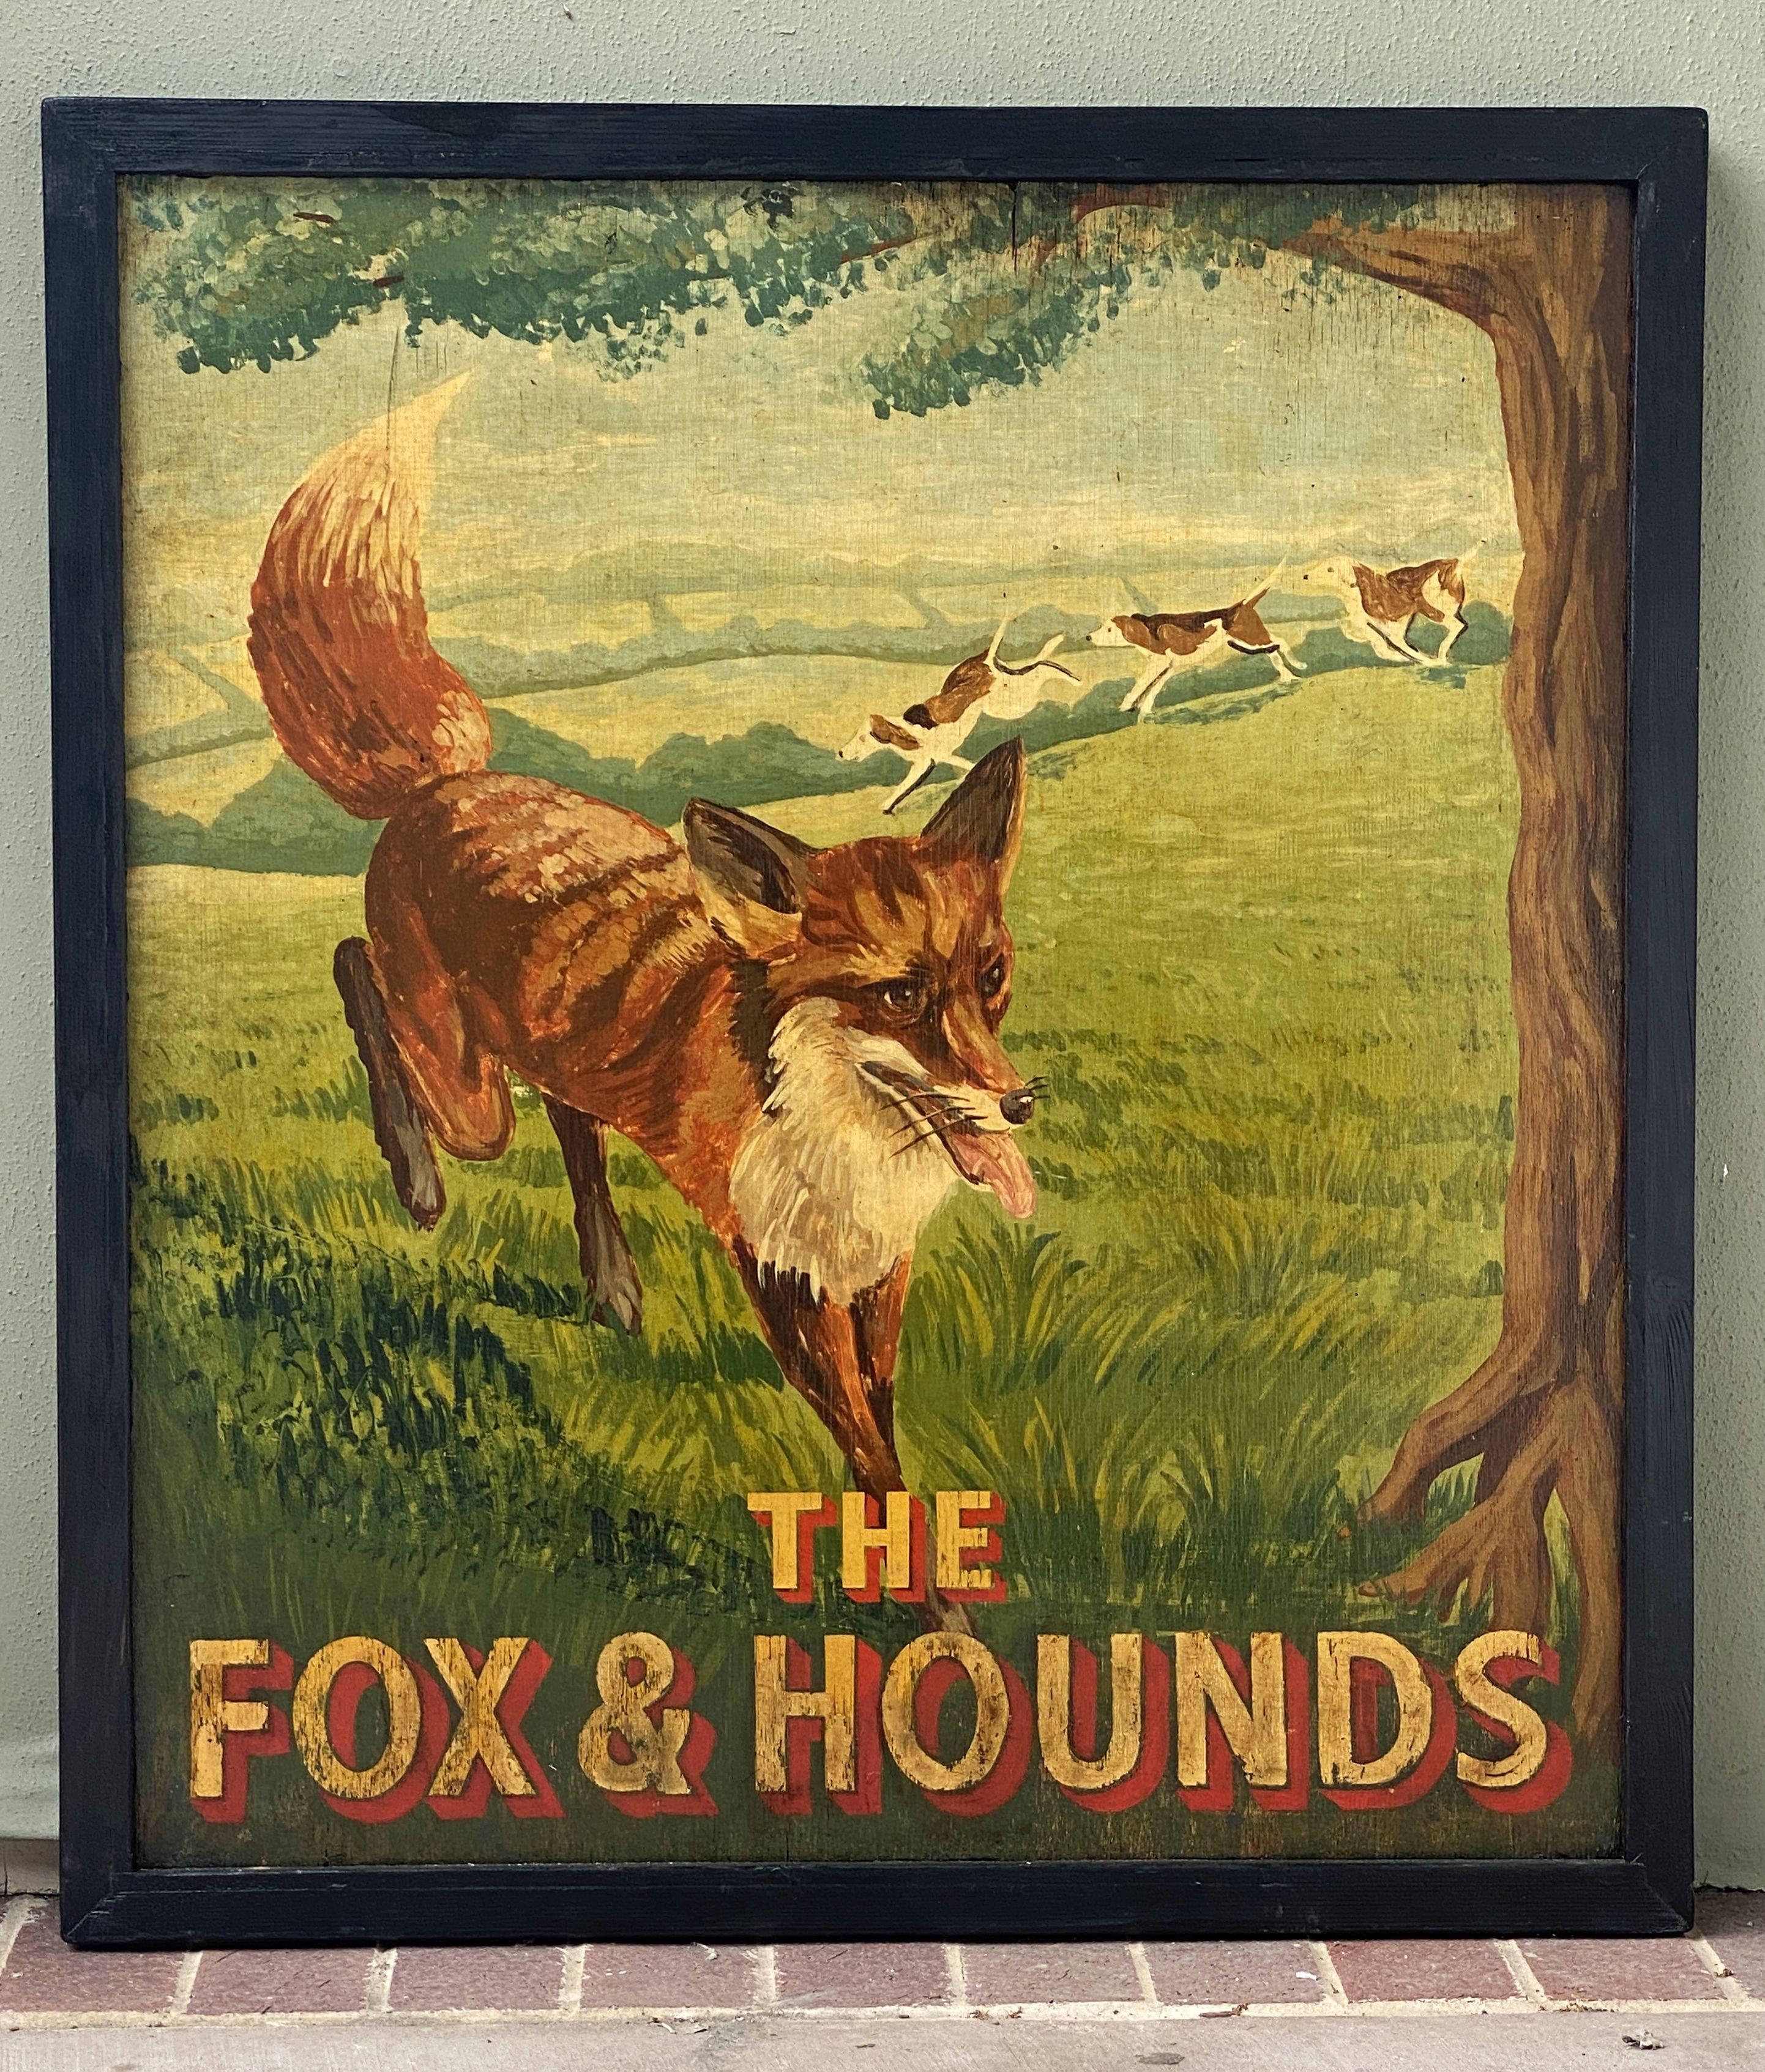 Authentique enseigne de pub anglais (unilatérale) représentant une peinture d'un renard poursuivi par trois chiens de chasse, intitulée : The Fox & Hounds

Un très bel exemple d'œuvre d'art publicitaire vintage, prêt à être exposé.